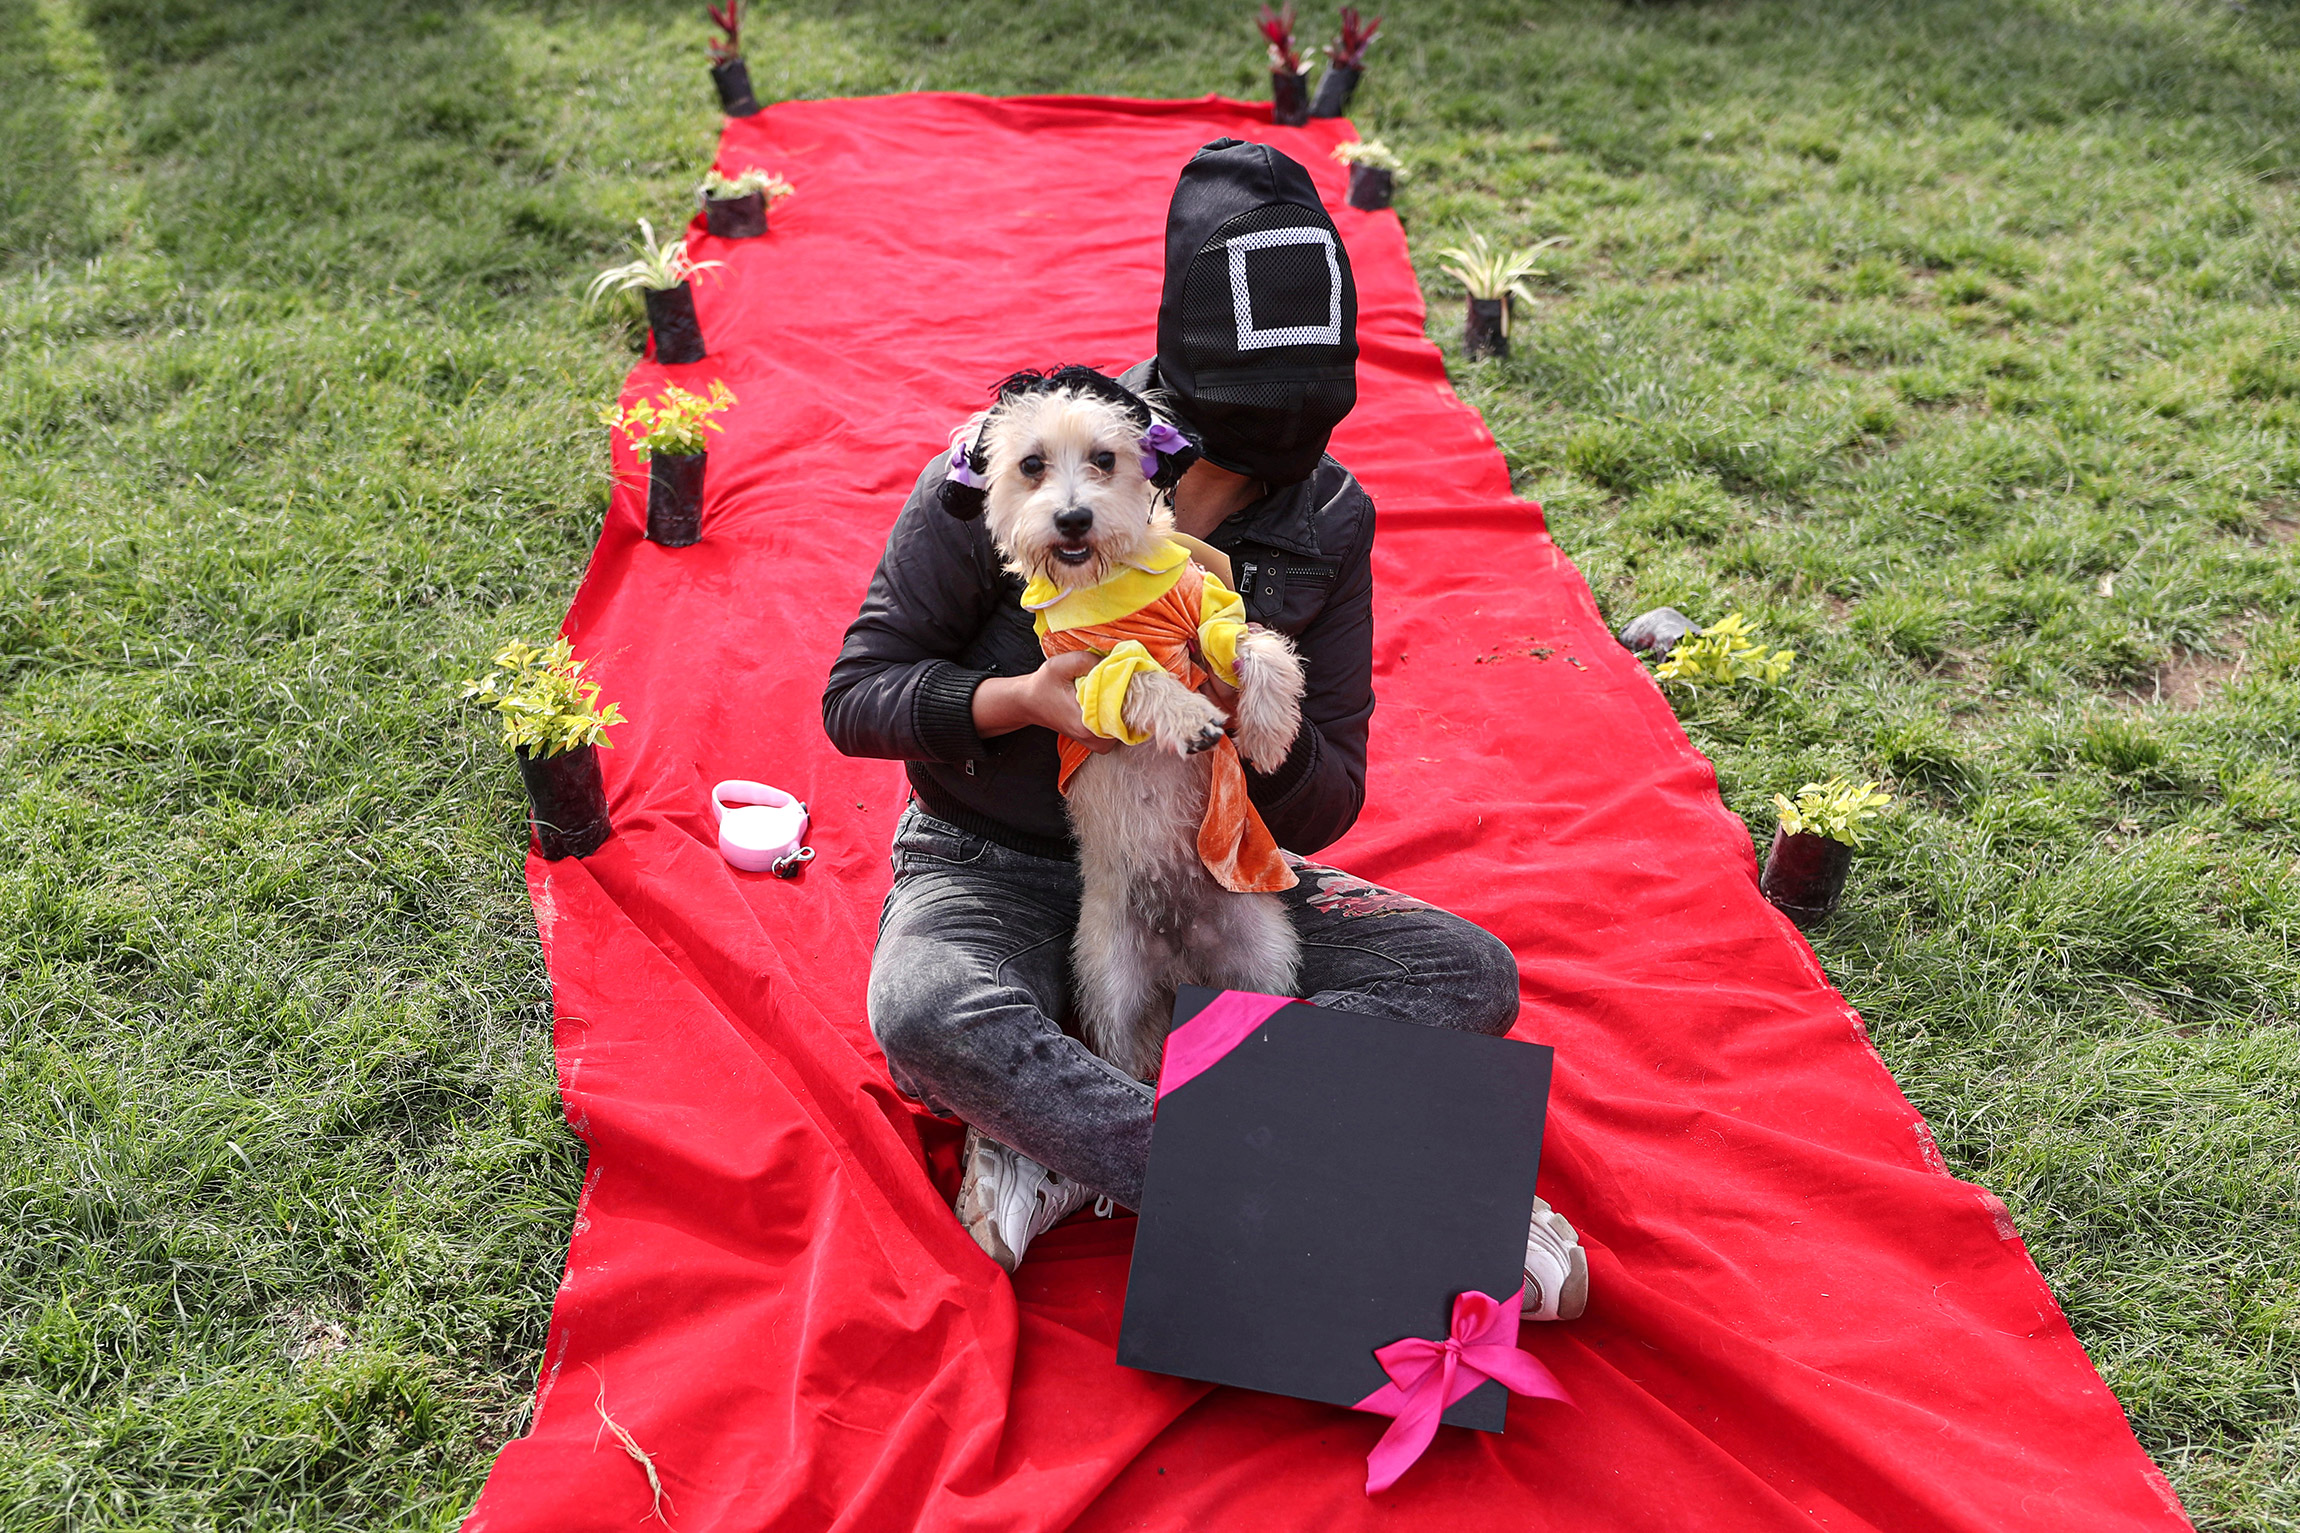 21 октября, Лима (Перу). Человек в костюме по мотивам сериала со своим питомцем на конкурсе хеллоуинских костюмов для собак